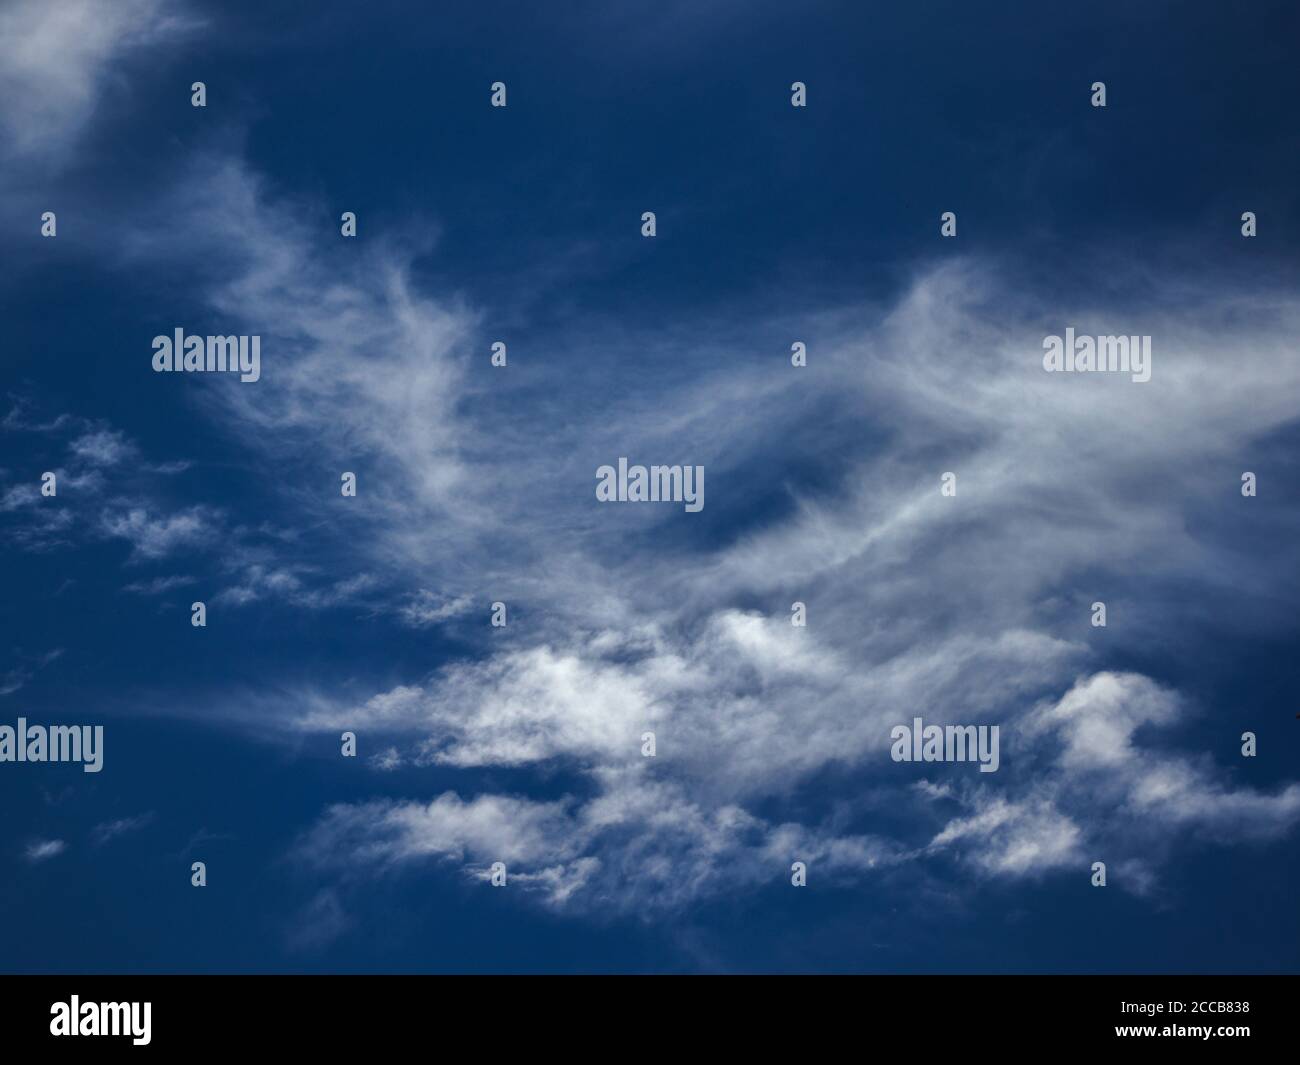 Schleier von dünnen Wolken von den Winden unter einem himmlischen blauen Himmel geblasen. Stockfoto